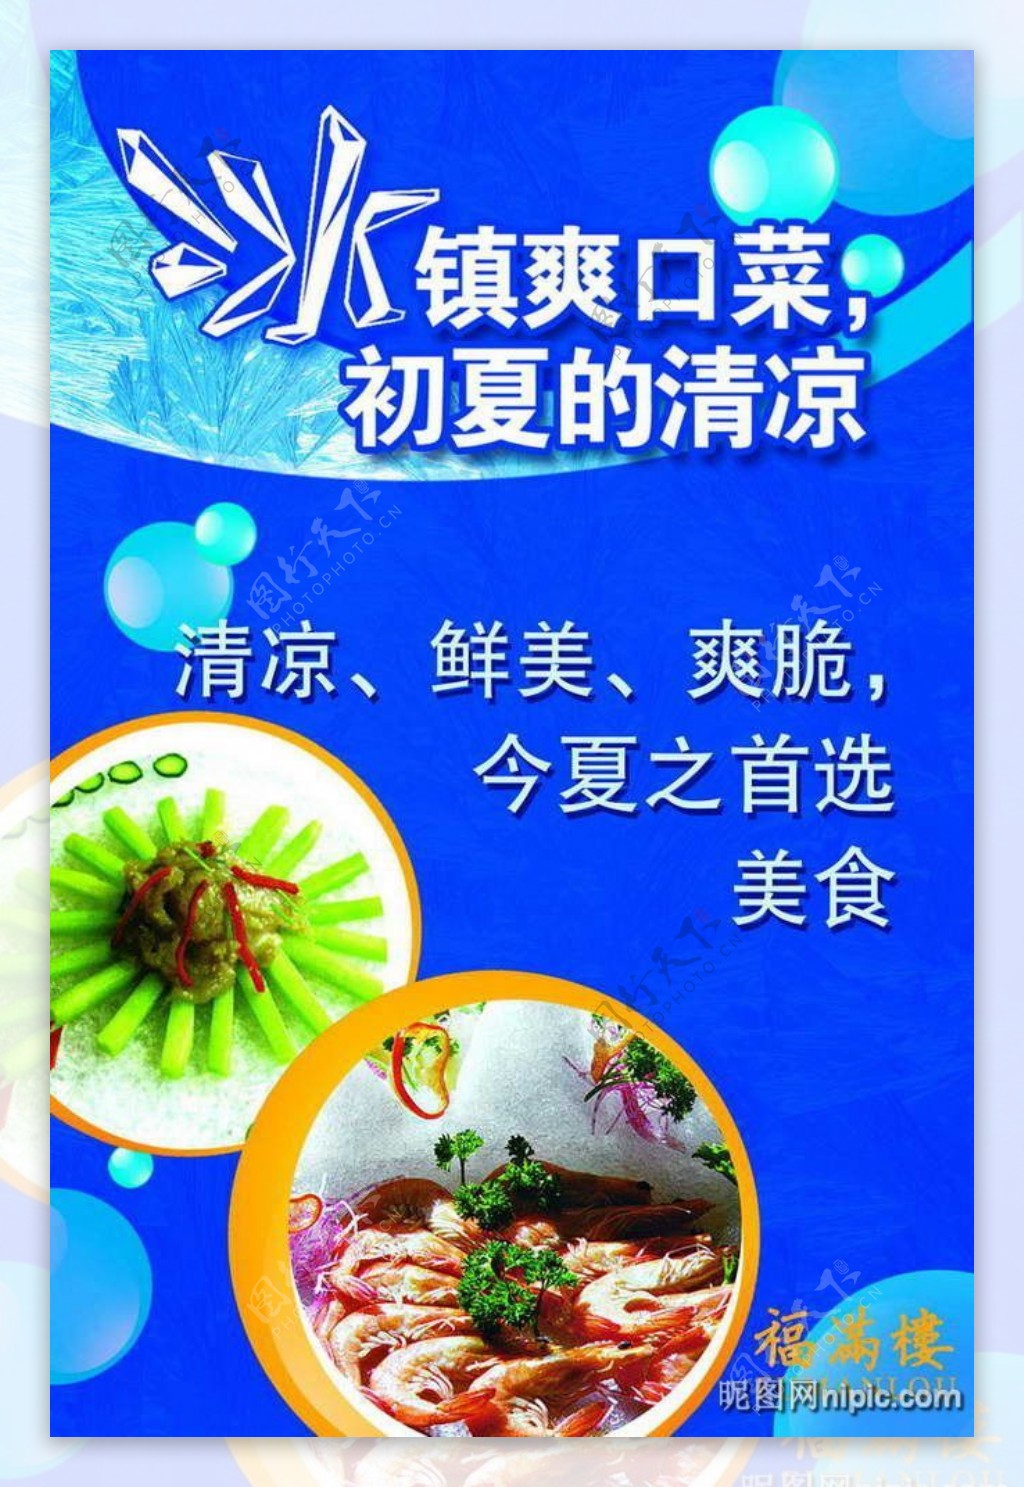 中餐厅夏日特色菜肴推介PSD模板图片